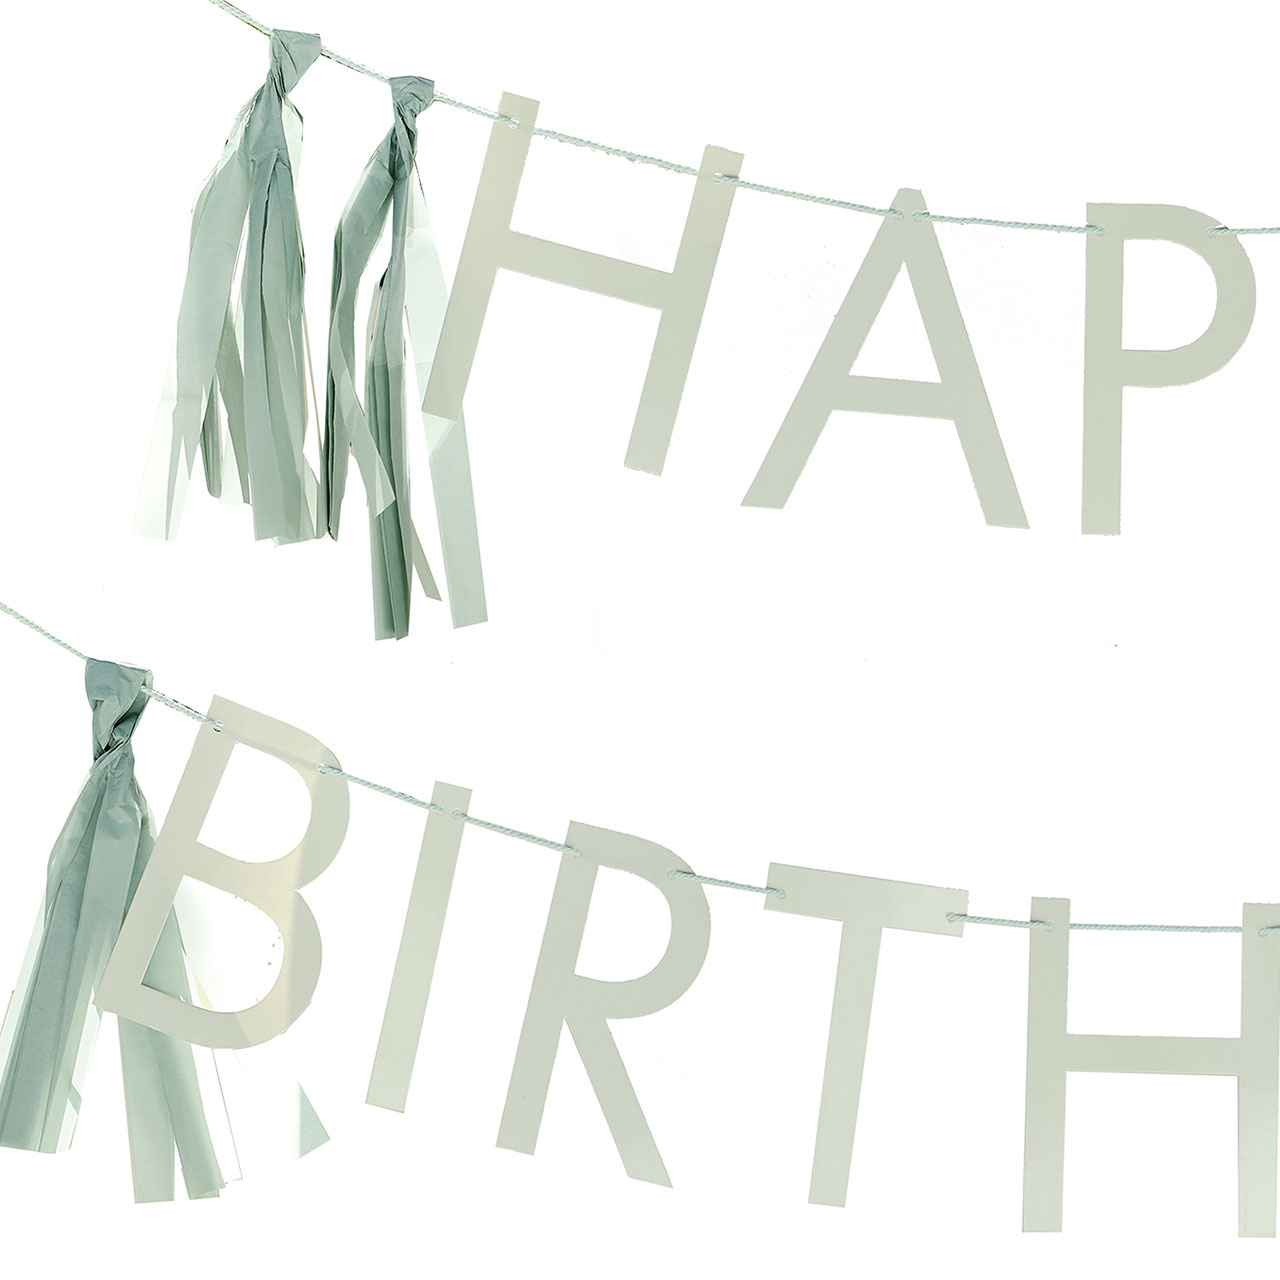 Buchstabenkette - Happy Birthday Salbeigrün